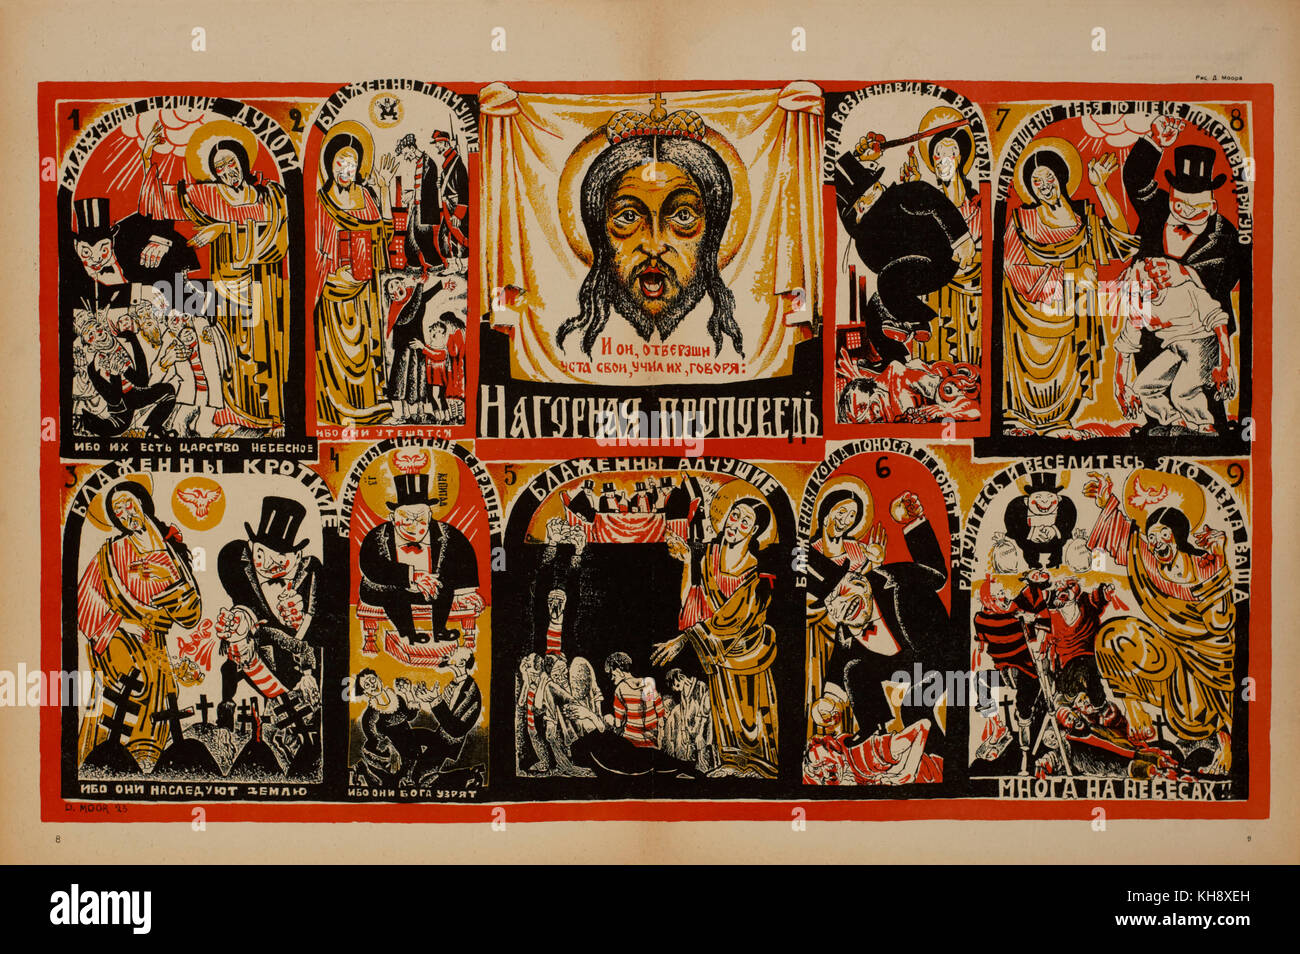 Anti-religione poster di propaganda, bezbozhnik u stanka magazine, illustrazione di Dmitry moor, Russia, 1923 Foto Stock